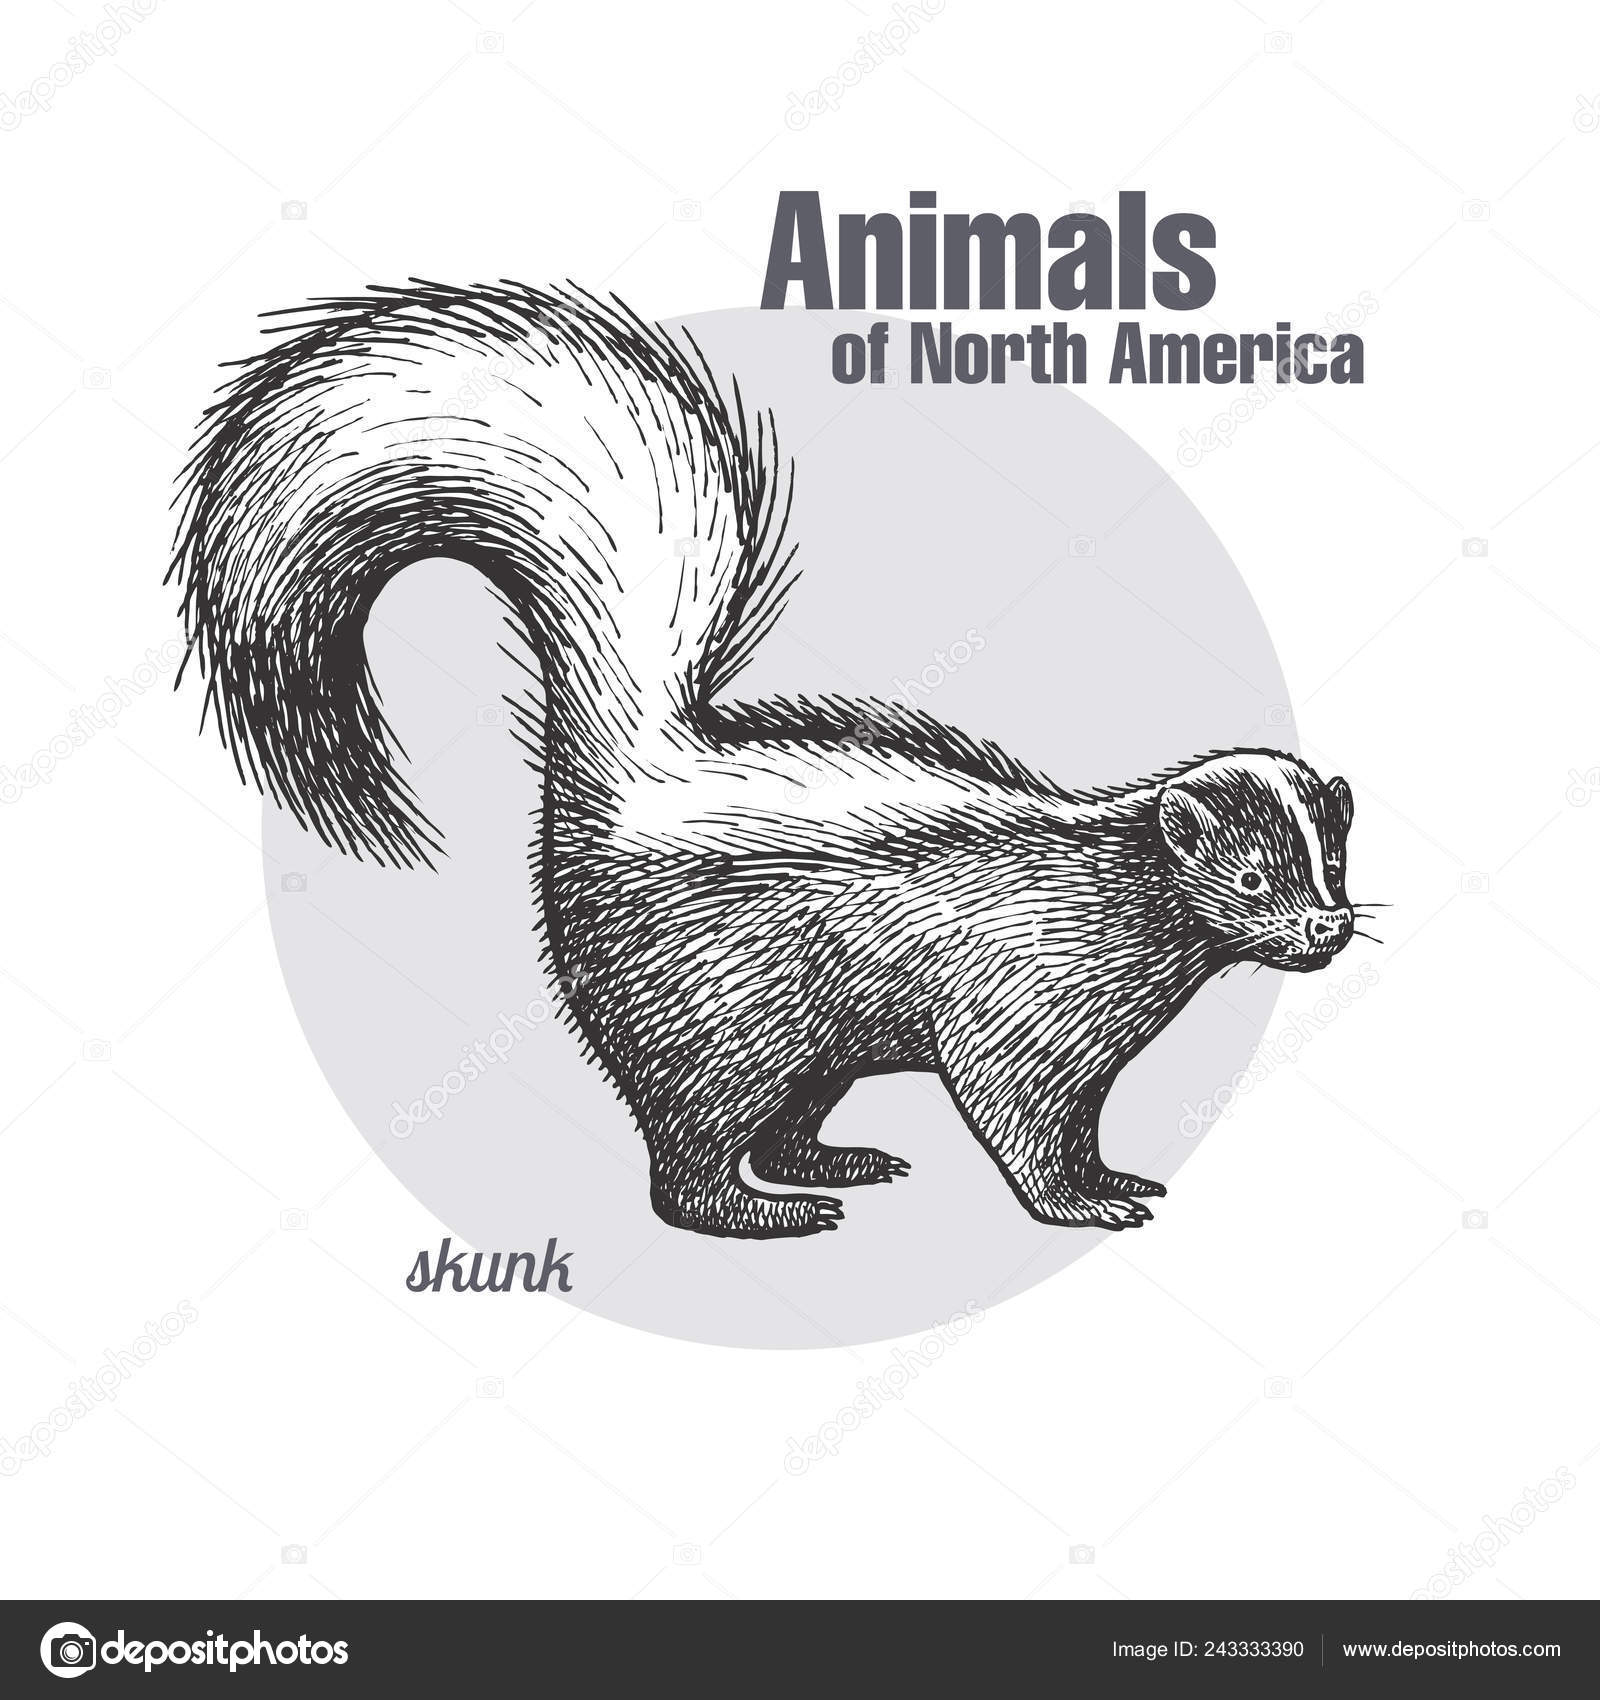 https://st4.depositphotos.com/2595103/24333/v/1600/depositphotos_243333390-stock-illustration-skunk-hand-drawing-wildlife-animals.jpg